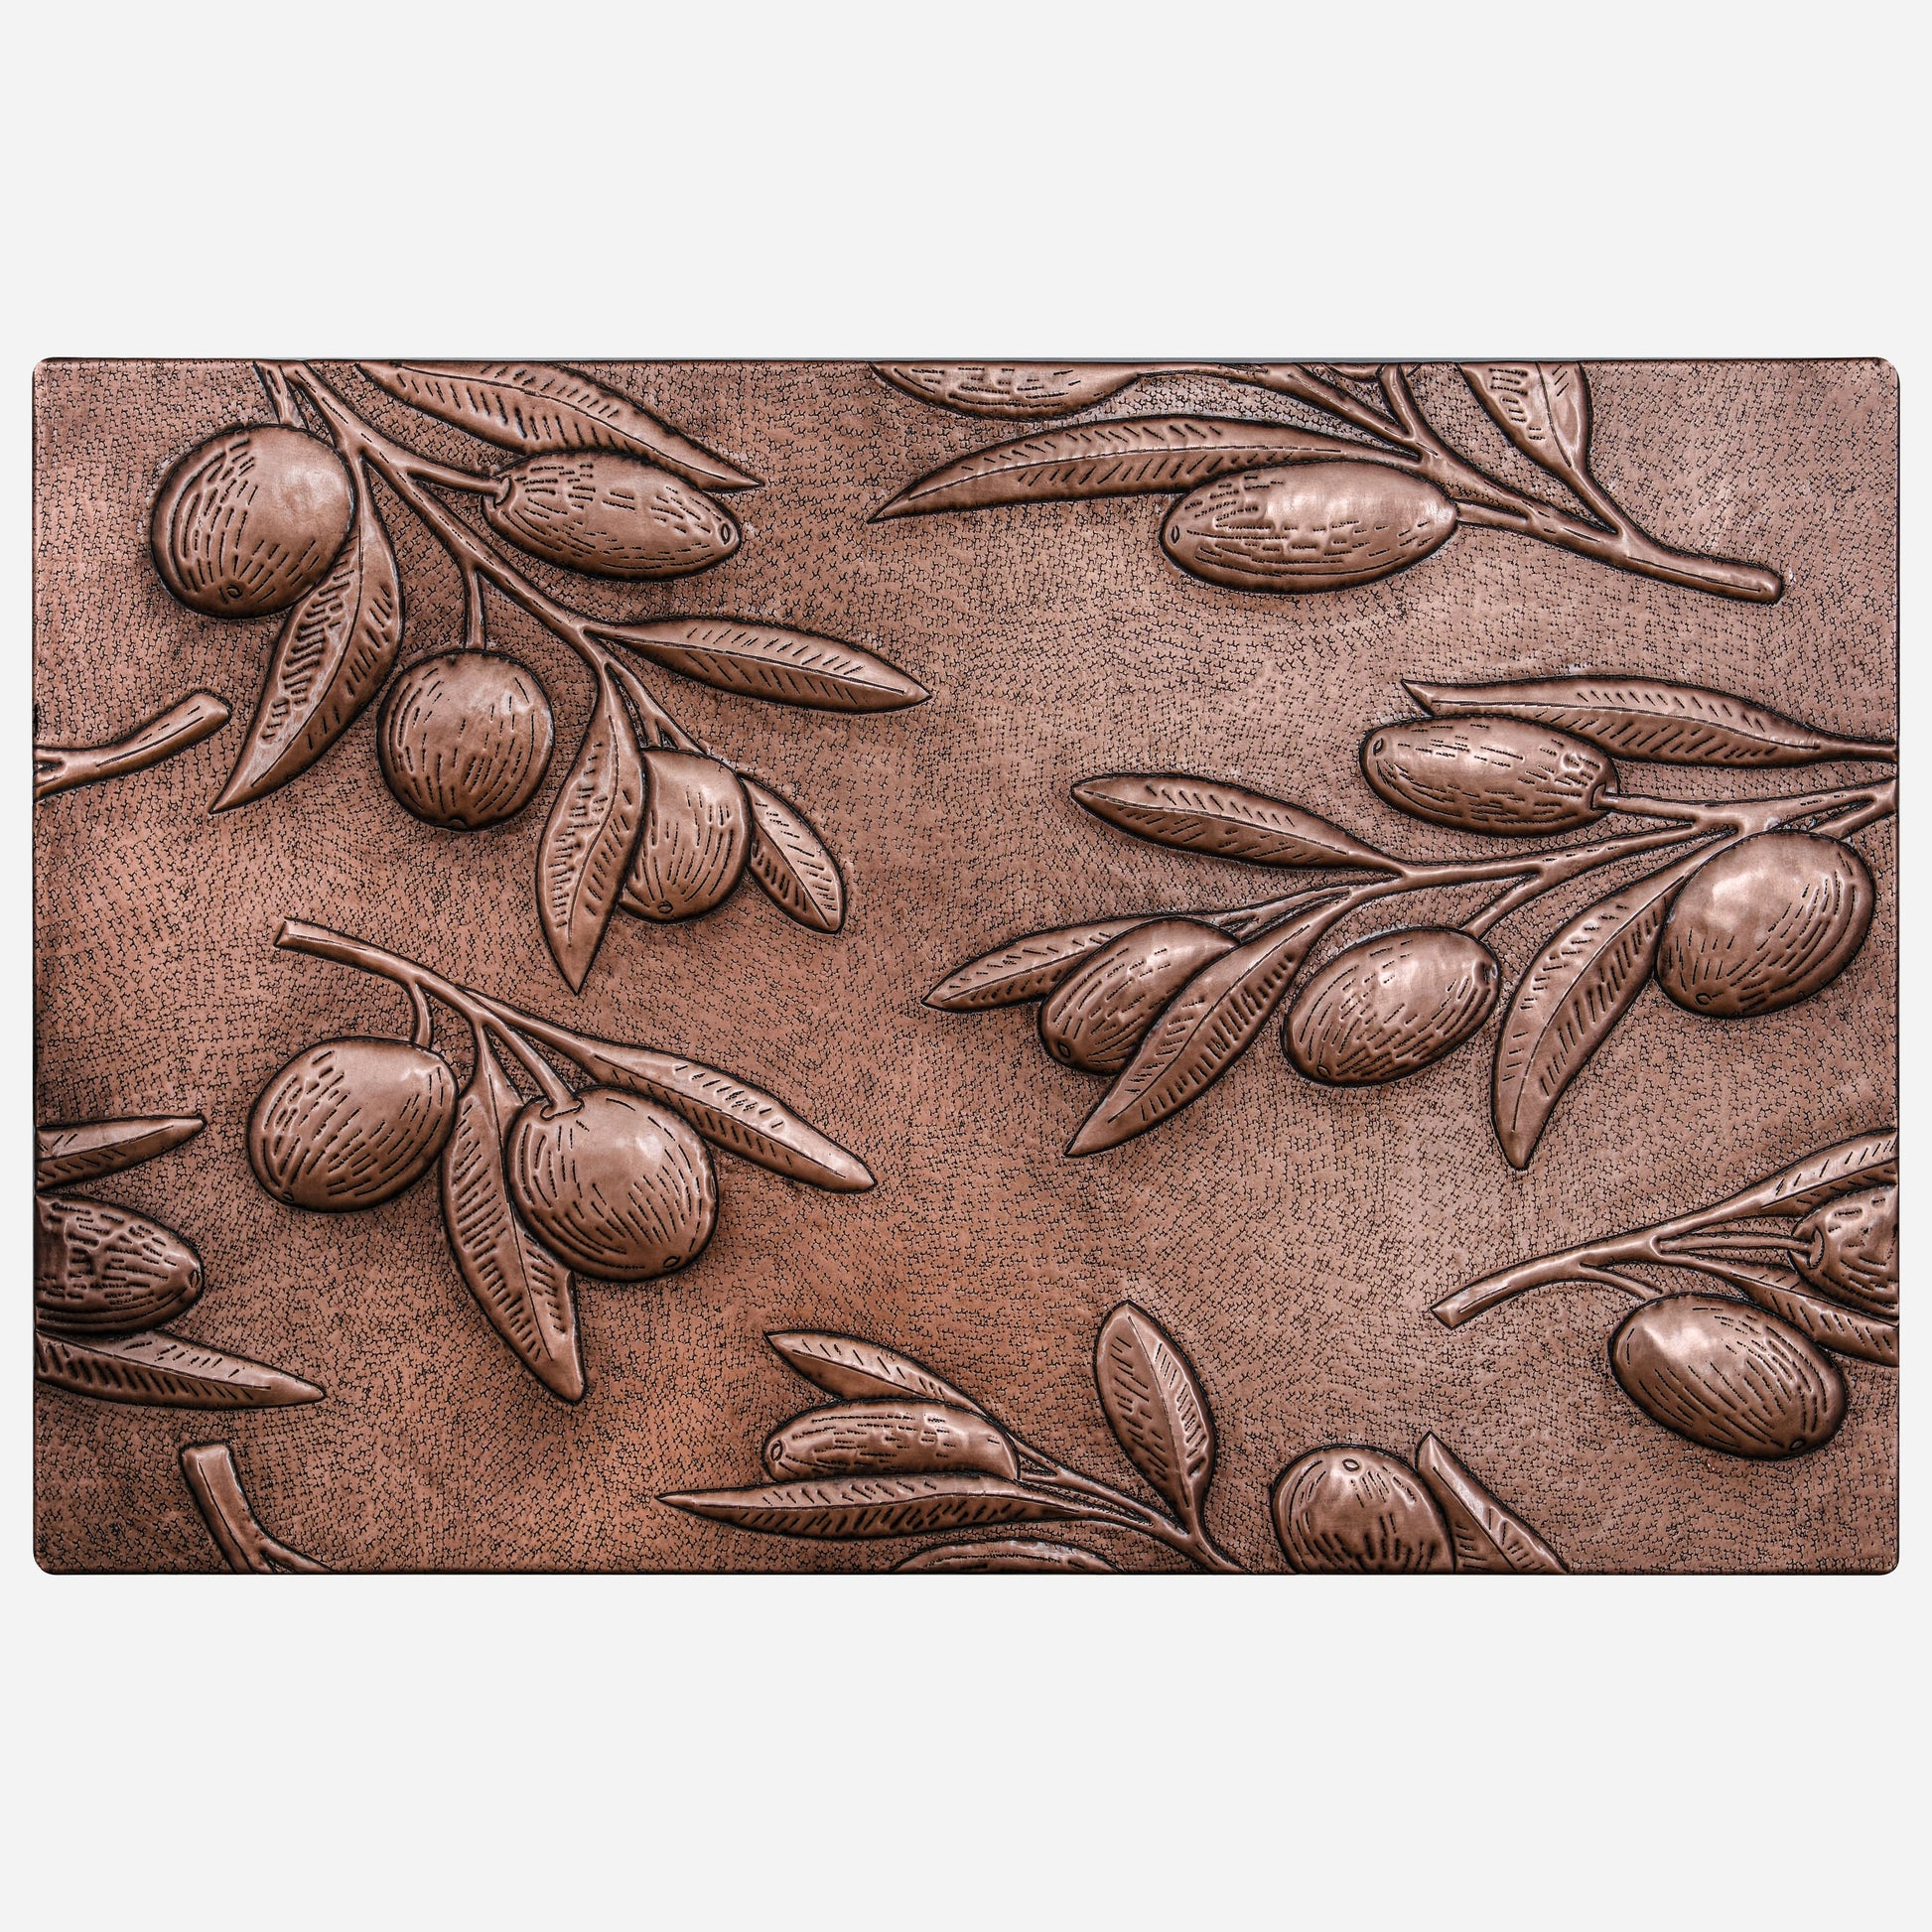 Olive Branches Copper Backsplash Tile